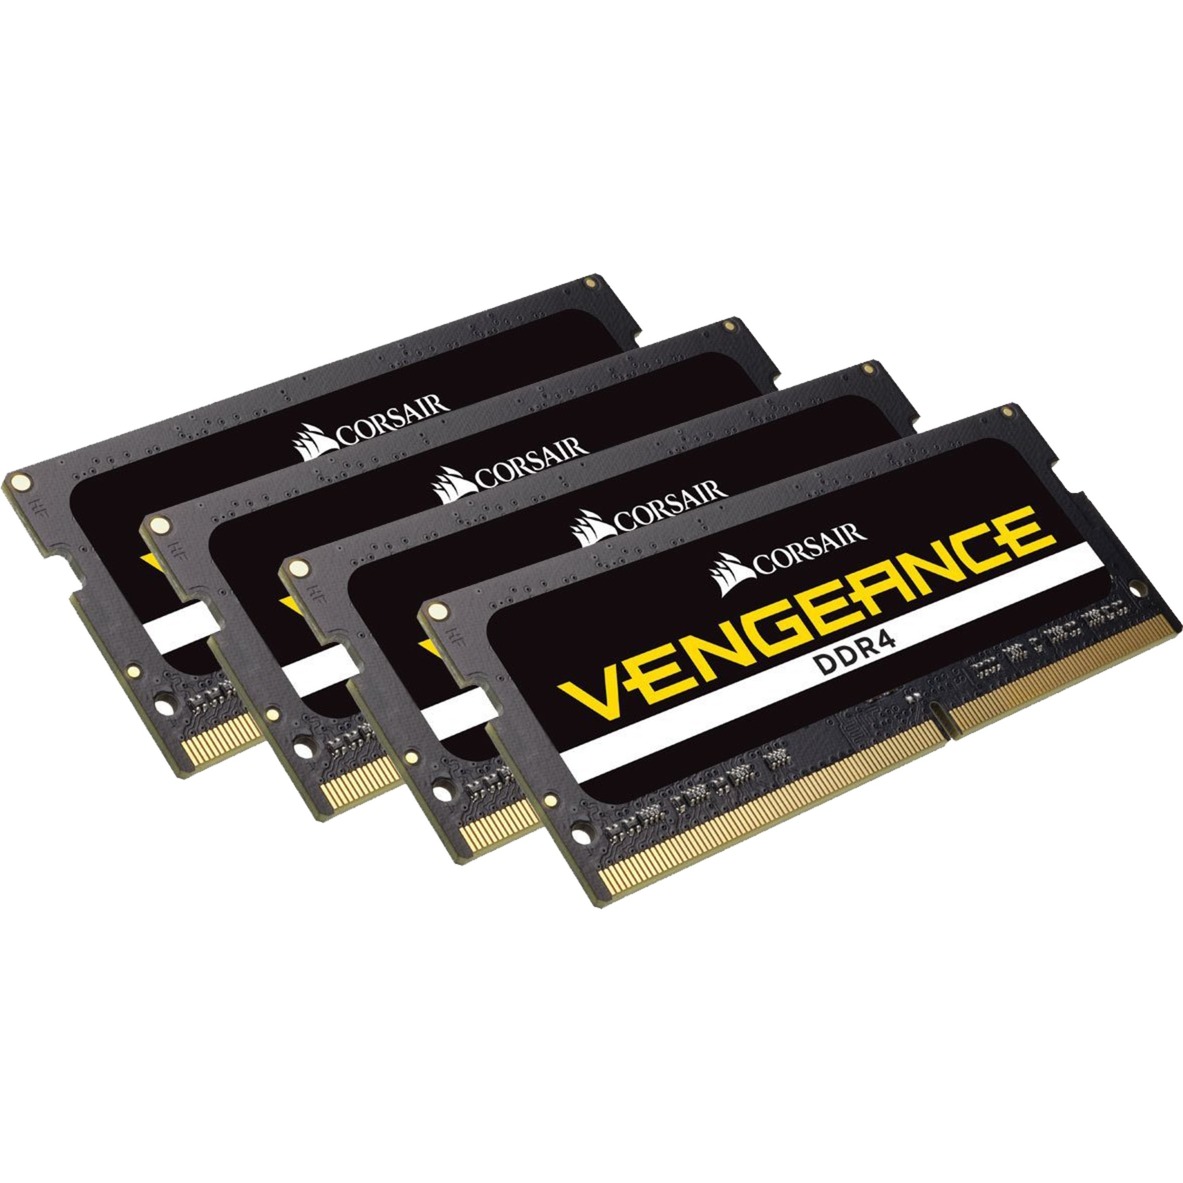 Vengeance 64GB, DDR4, 2400MHz 64GB DDR4 2400Mhz moduł pamięci, Pamięc operacyjna